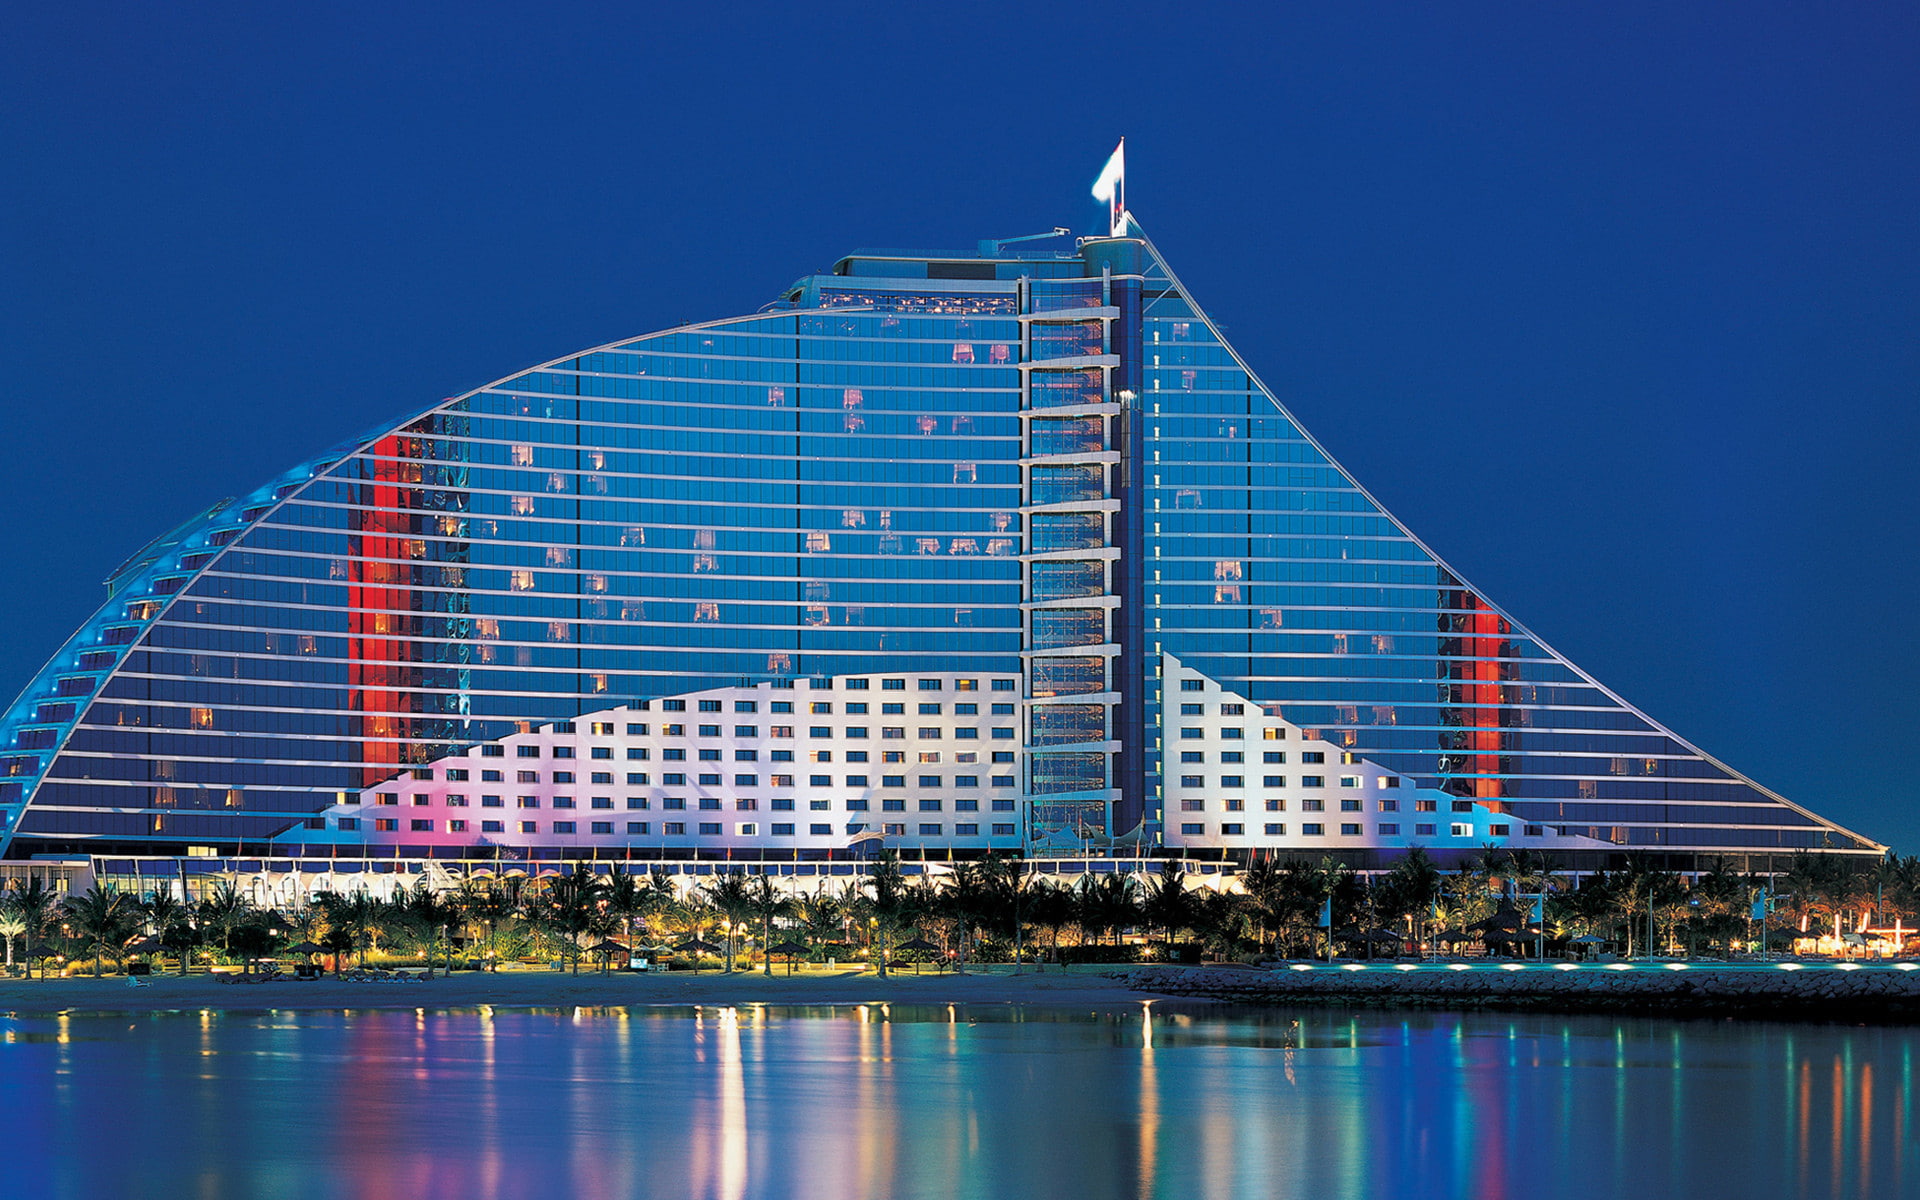 Dubai, Jumeirah Beach Hotel, UAE, s, Best s